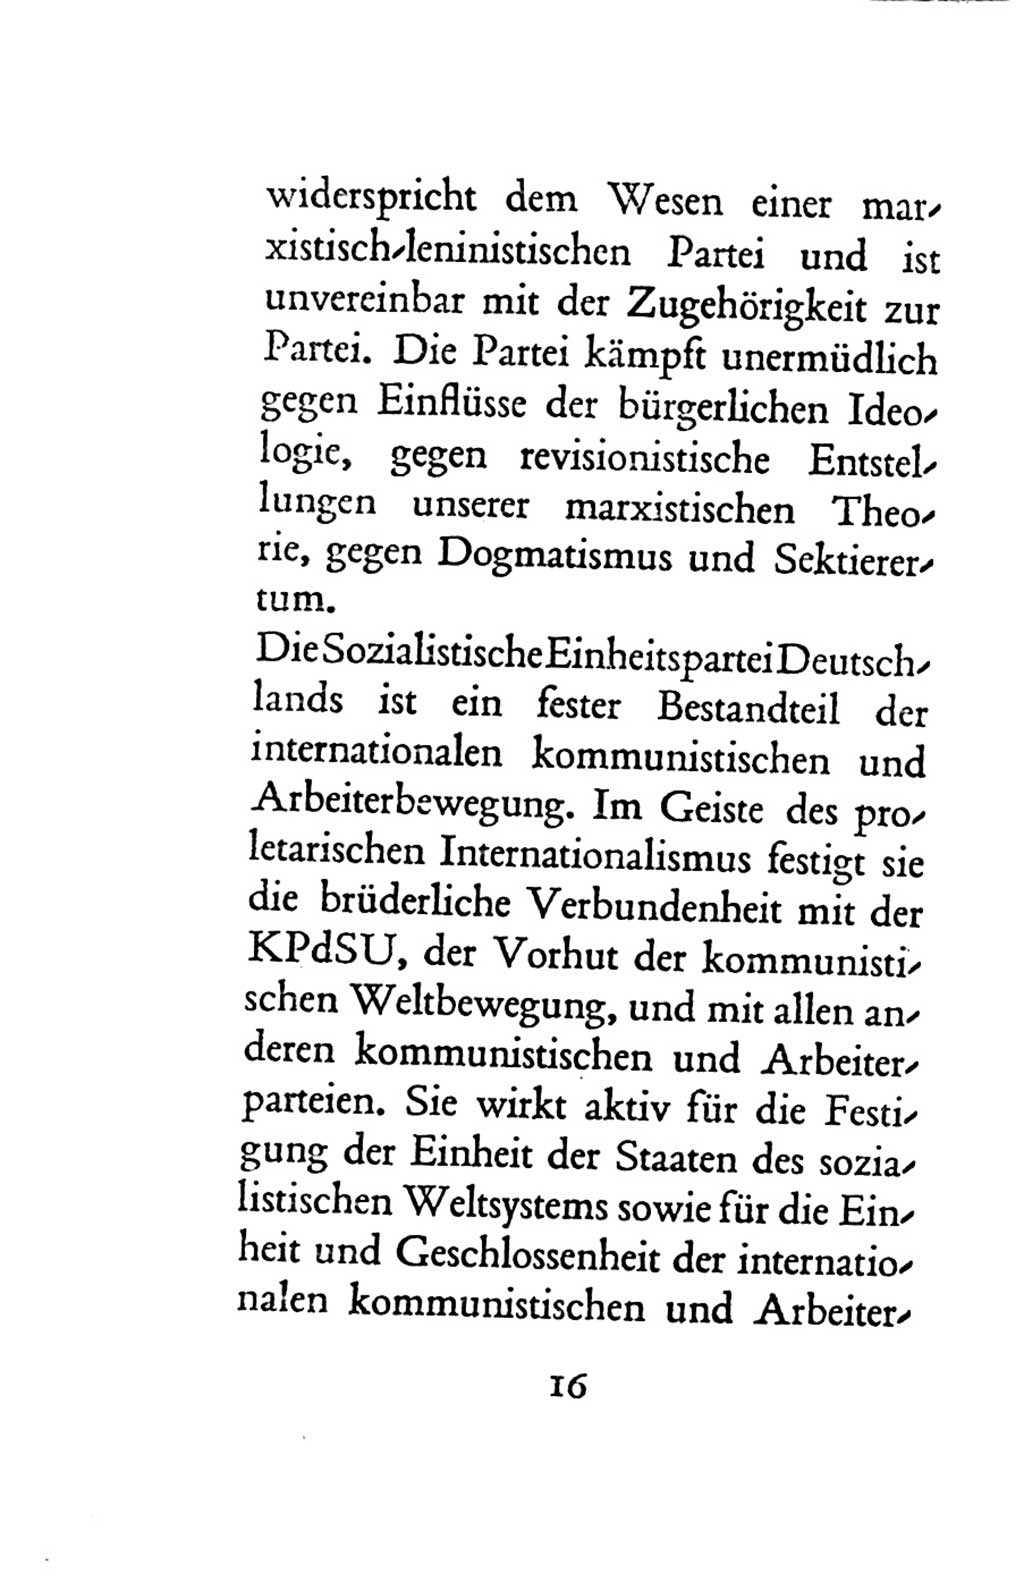 Statut der Sozialistischen Einheitspartei Deutschlands (SED) 1963, Seite 16 (St. SED DDR 1963, S. 16)